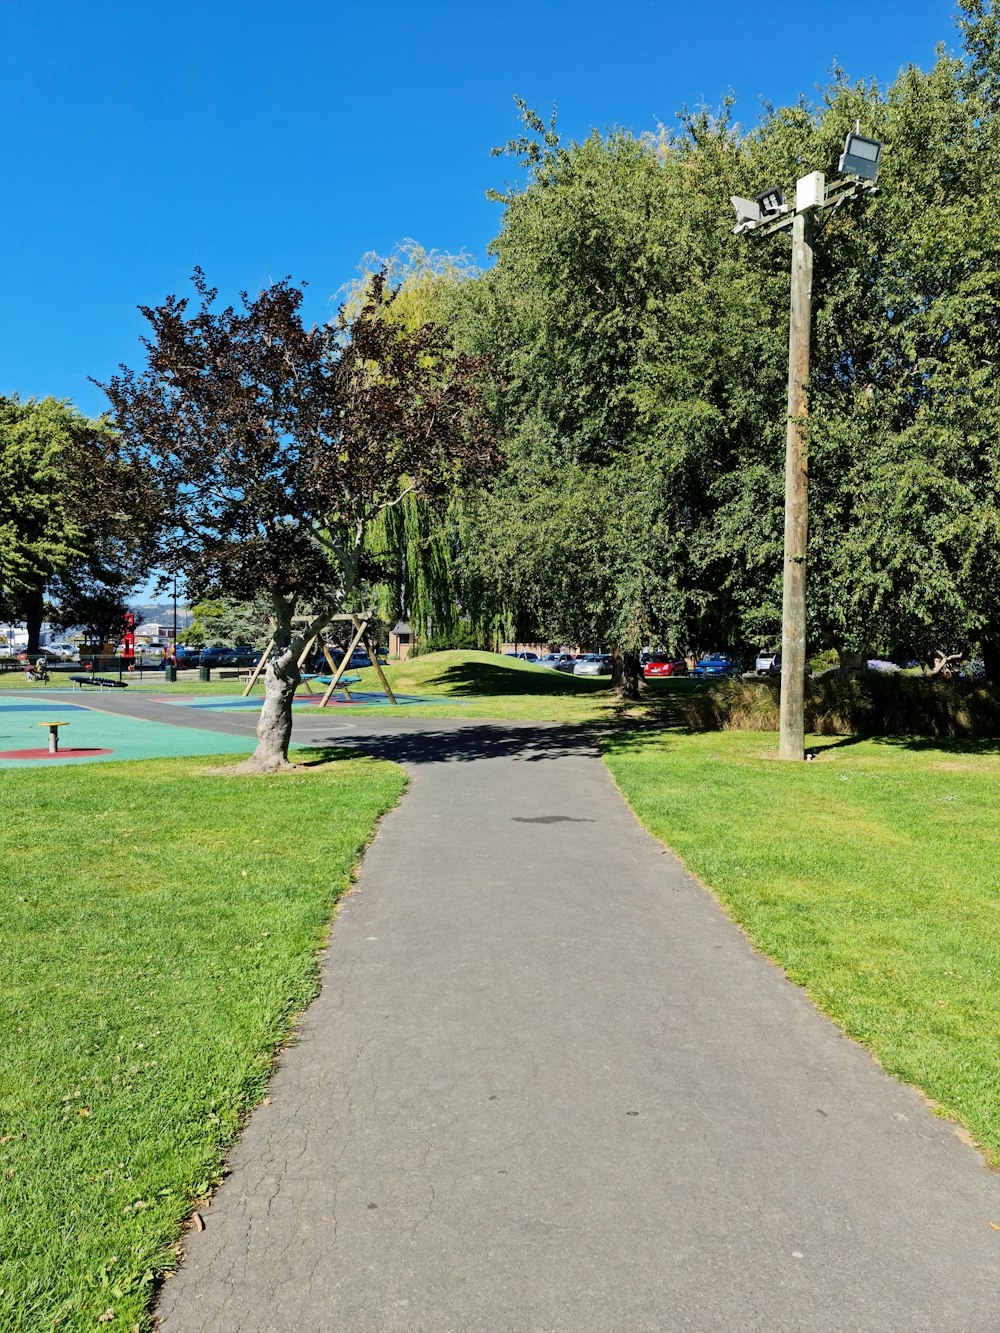 um caminho pavimentado em um parque com um playground ao fundo